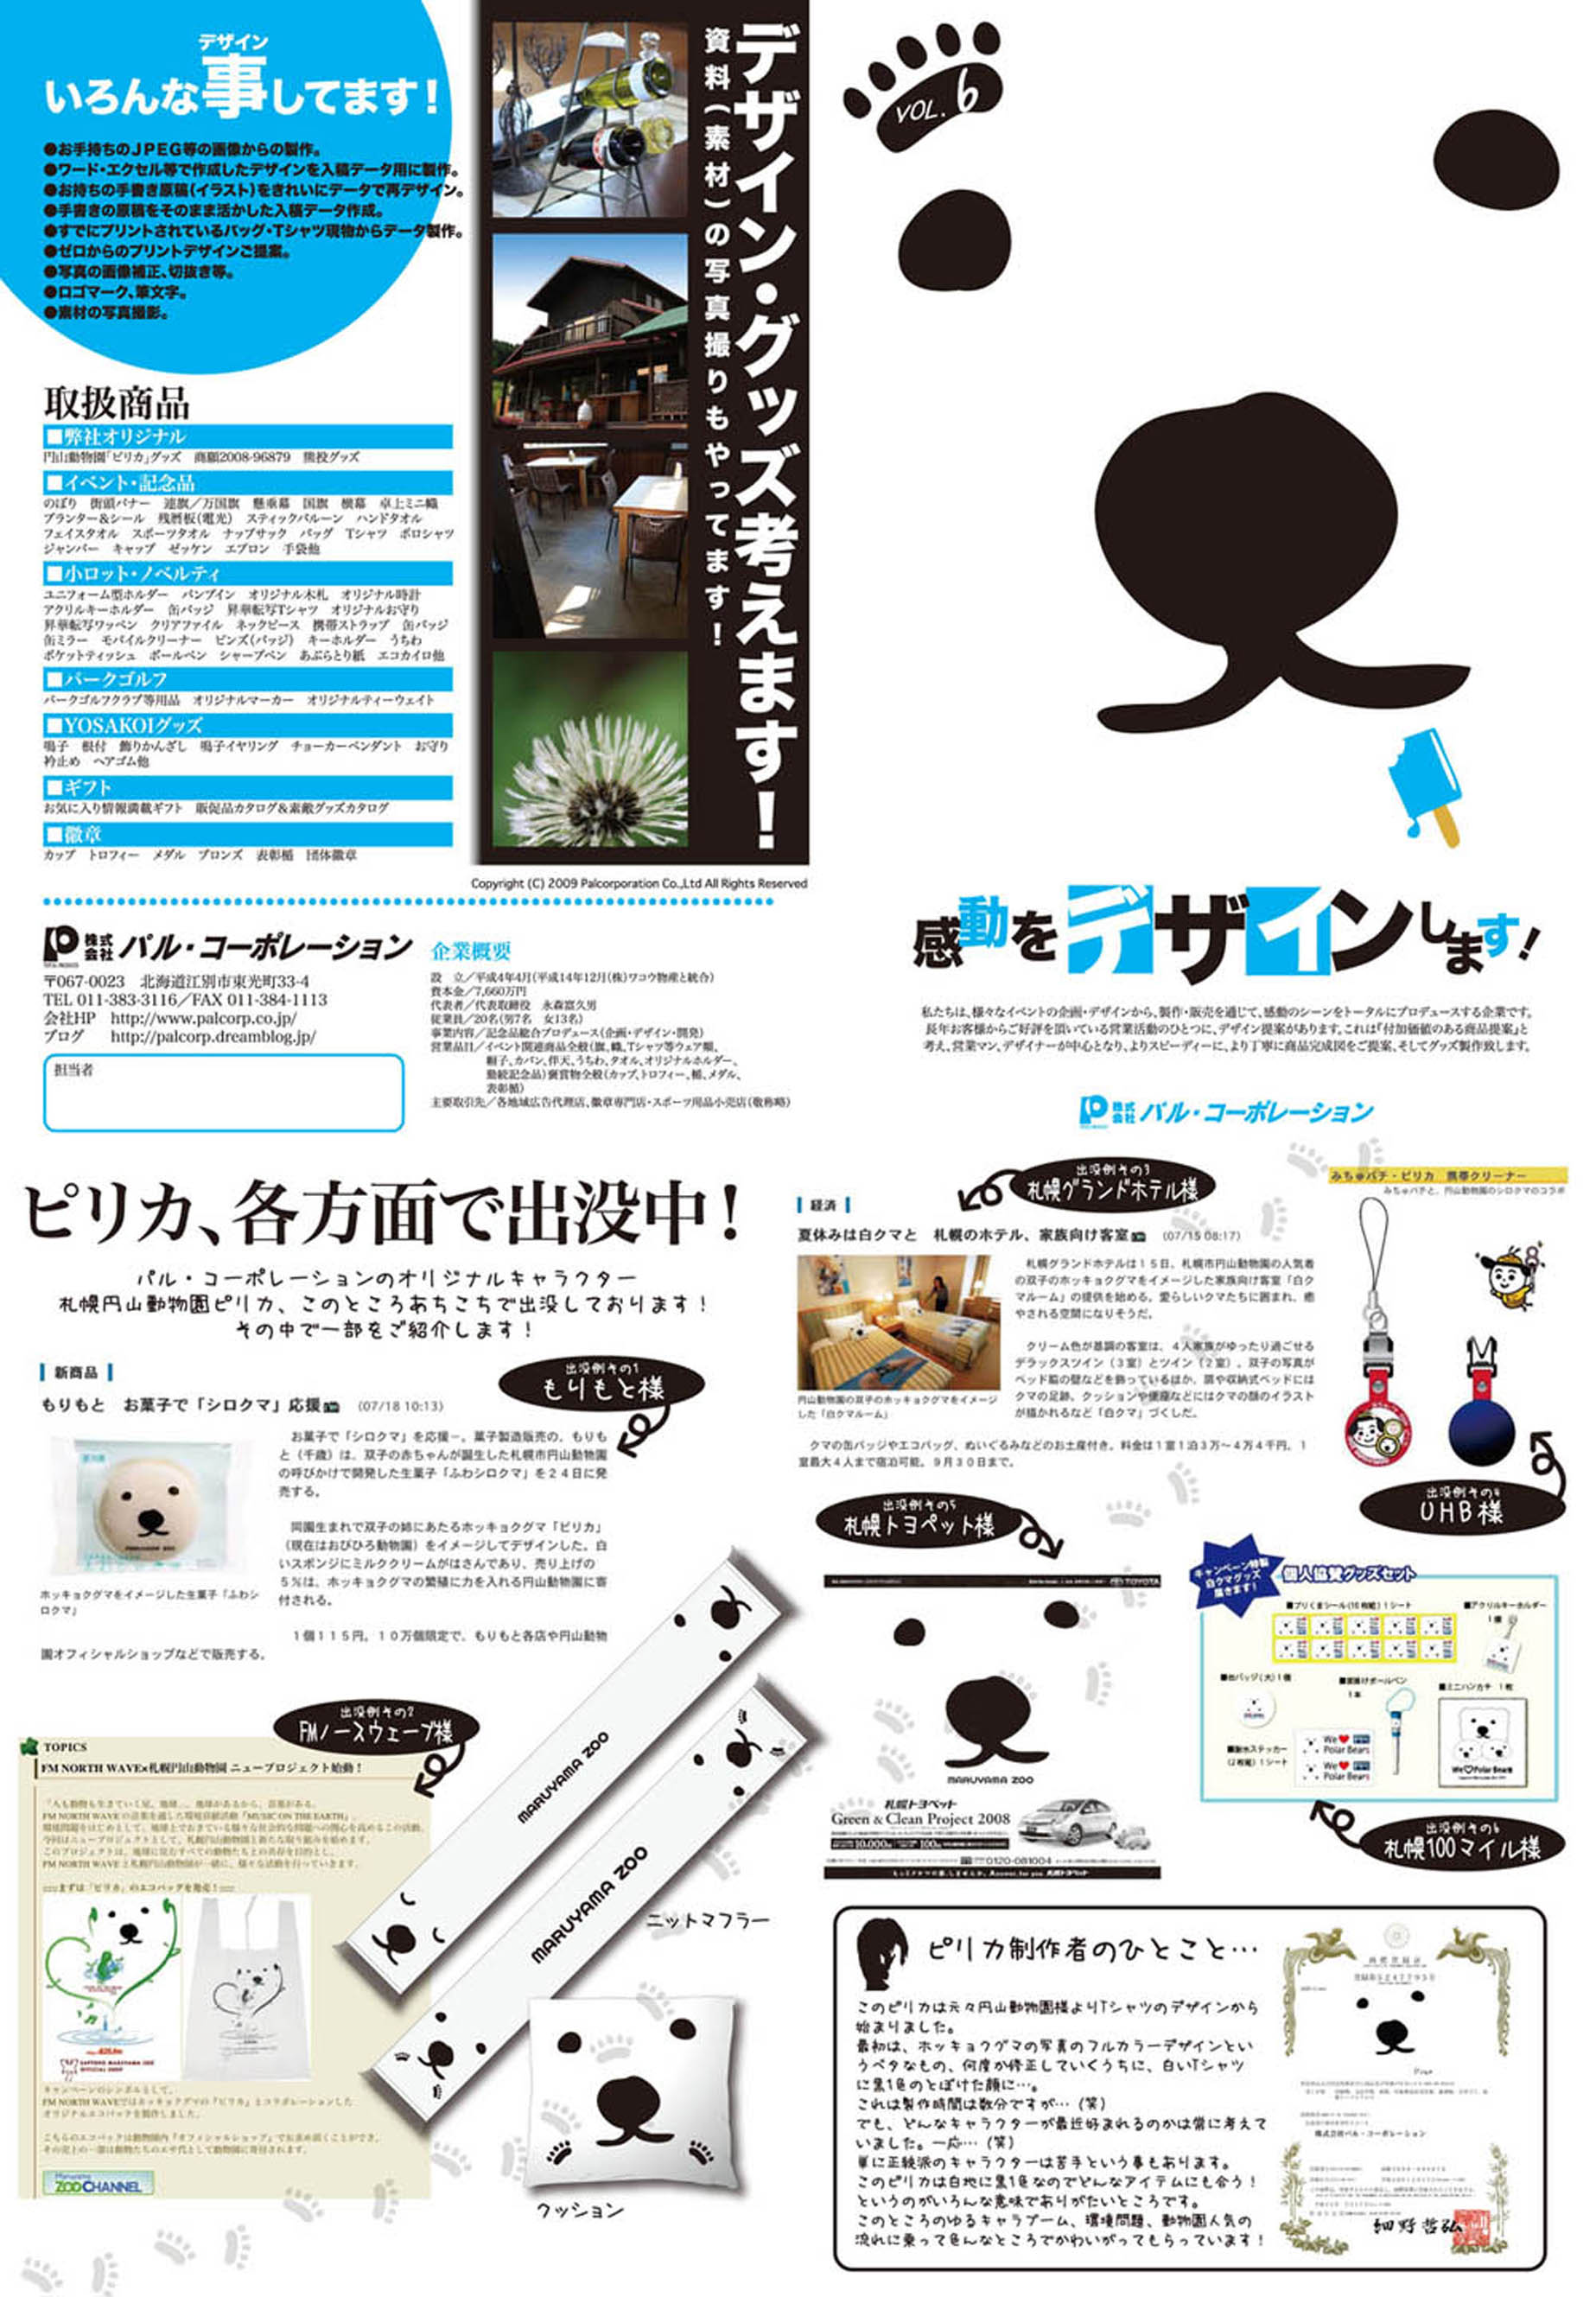 取扱商品チラシvol 6 札幌円山動物園ピリカ関連記事のご紹介 オリジナルグッズを作るなら パル コーポレーション